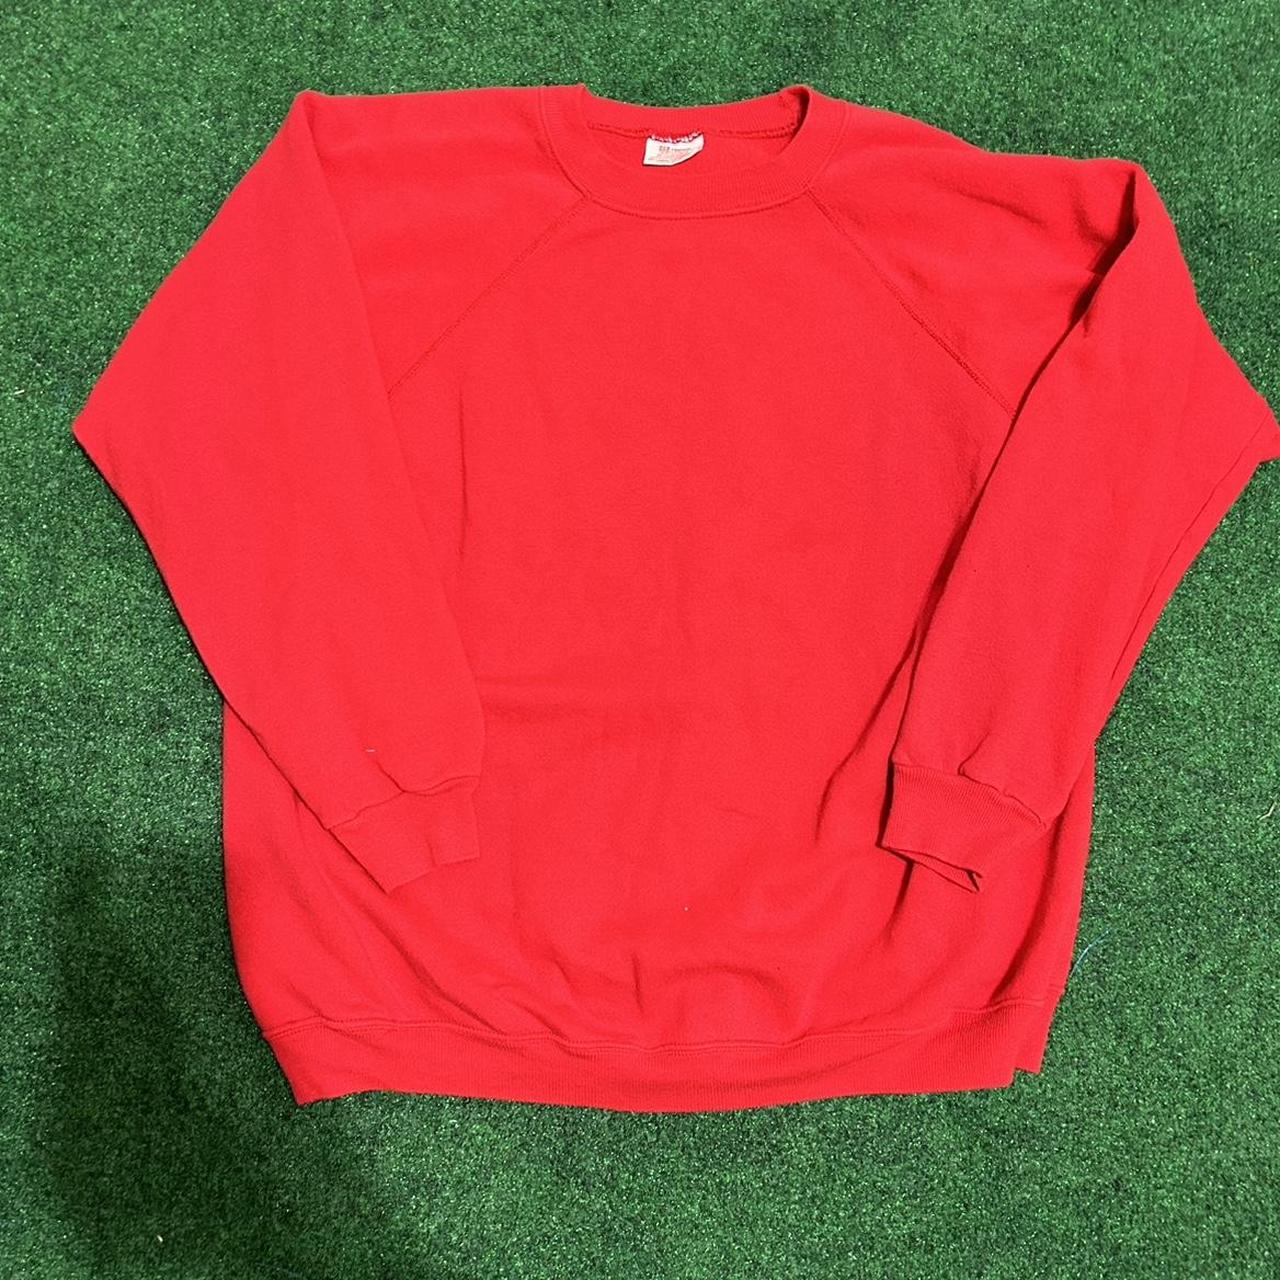 Hanes Men's Red Sweatshirt | Depop